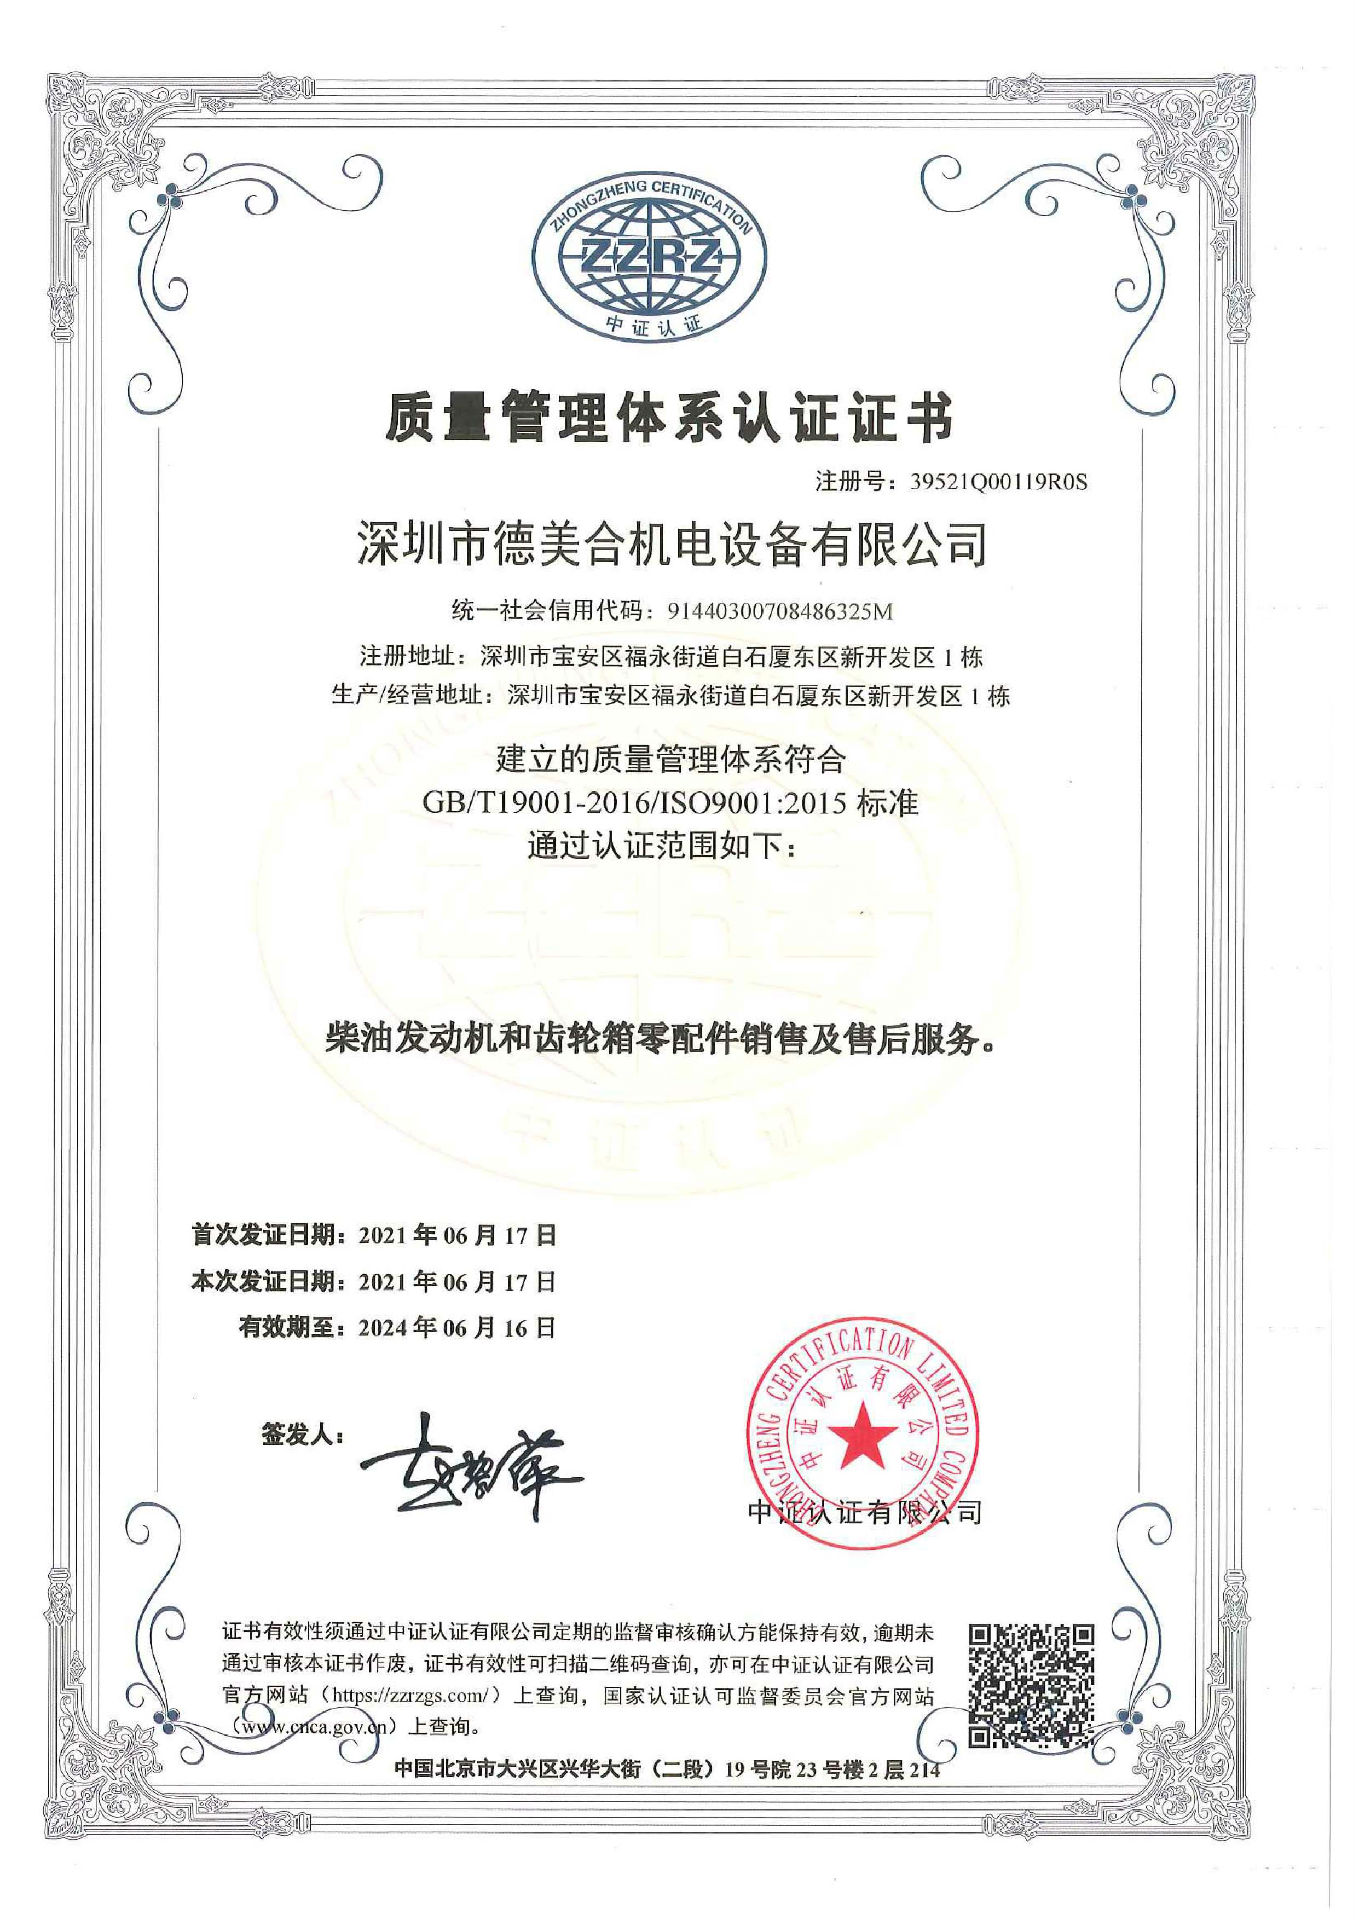 热烈祝贺深圳市威尼斯欢乐娱人v675合机电设备有限公司顺利通过ISO三体系认证